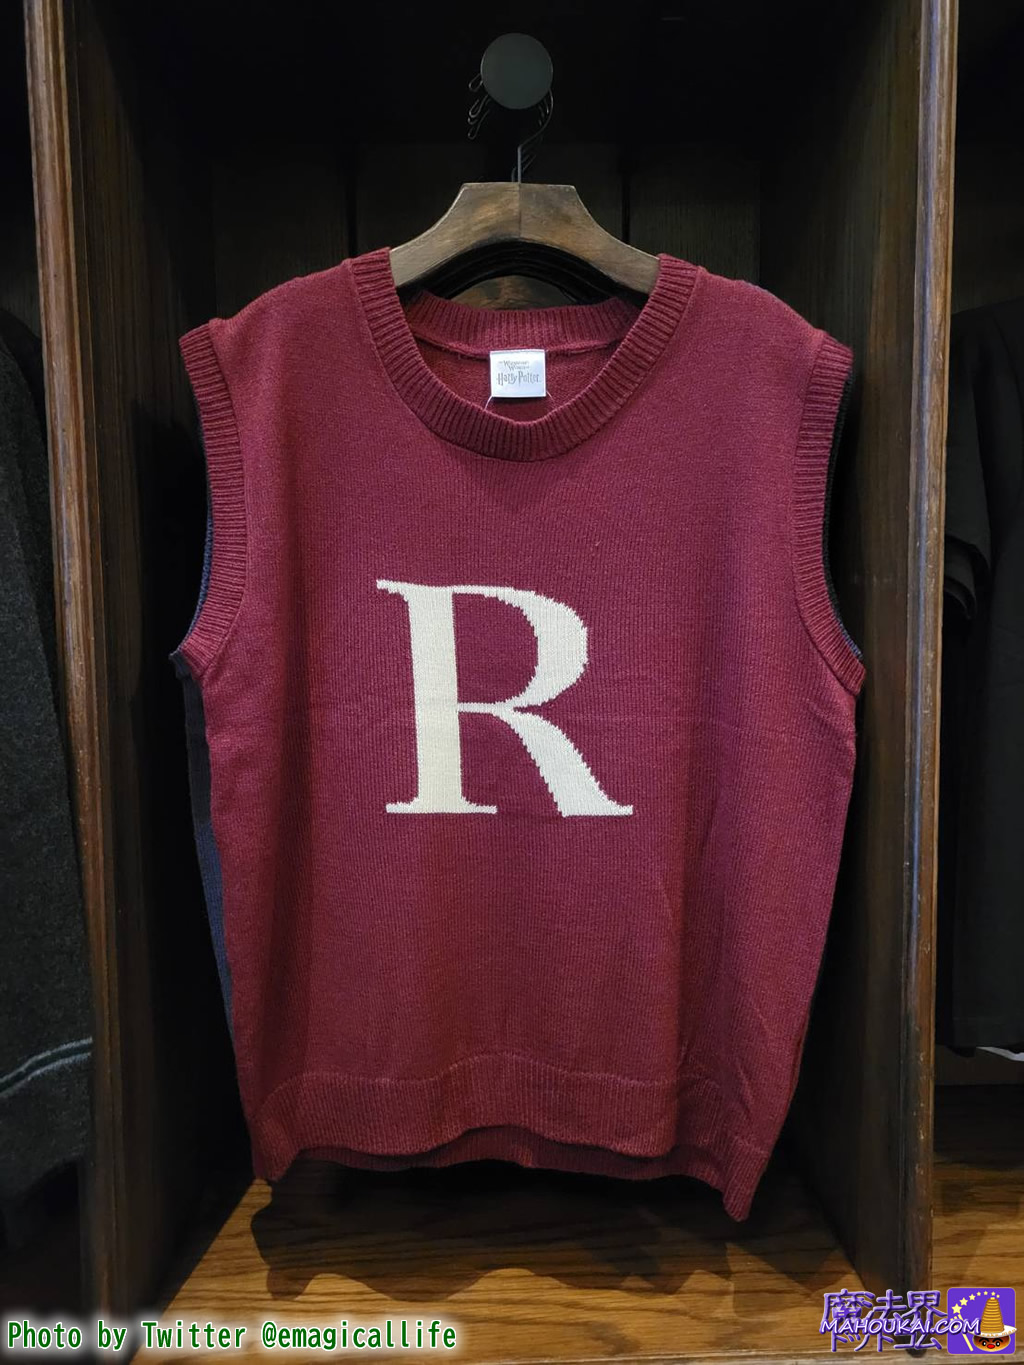 Waistcoat (Tank Top) inspired by Ron Weasley's 'R' jumper, USJ 'Harry Potter Area'.